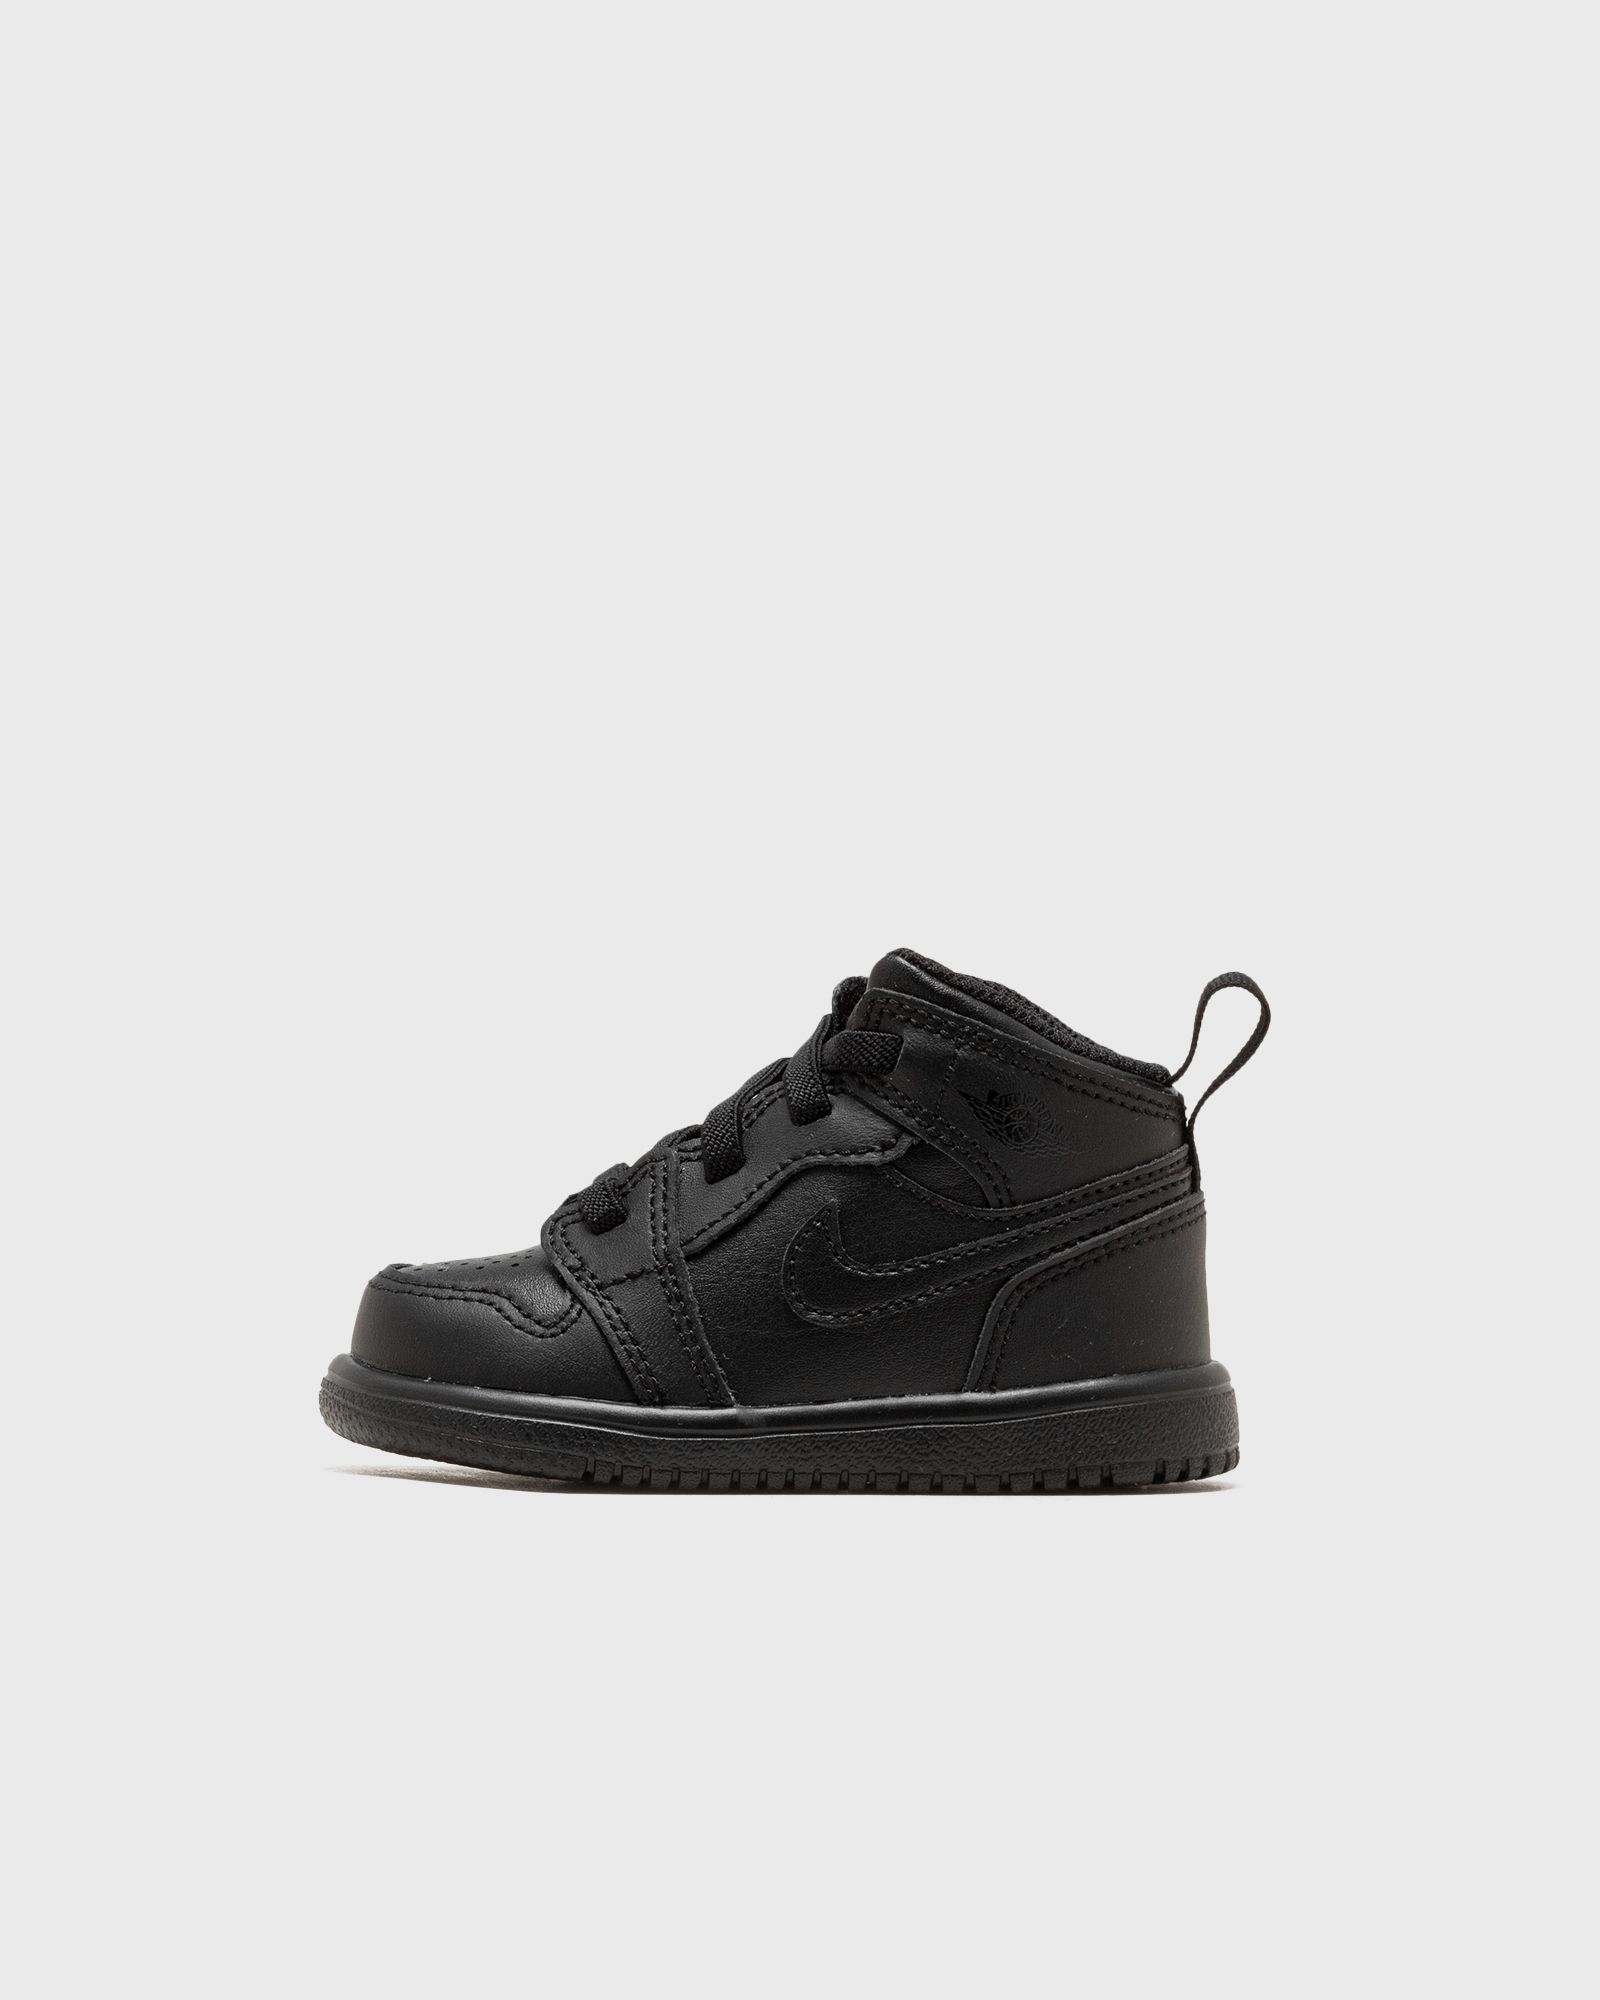 Jordan - 1 mid alt (td)  sneakers black in größe:27